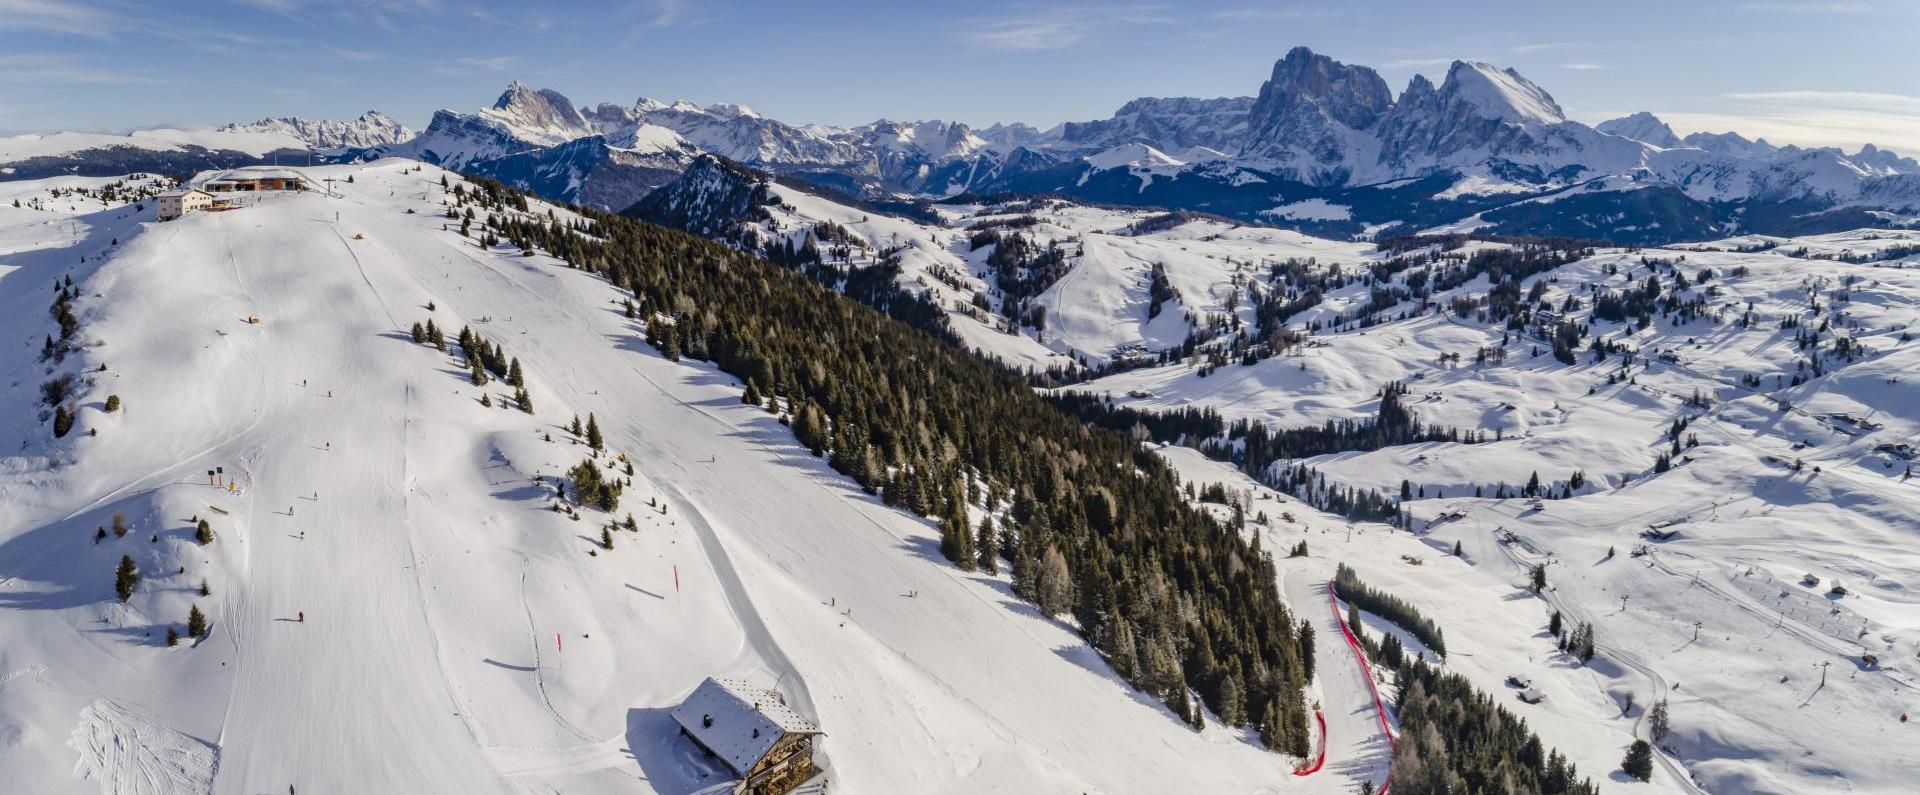 Dolomiti Superski Panorama Ansicht der Seiser Alm Skipisten mit den Dolomiten im Hintergrund